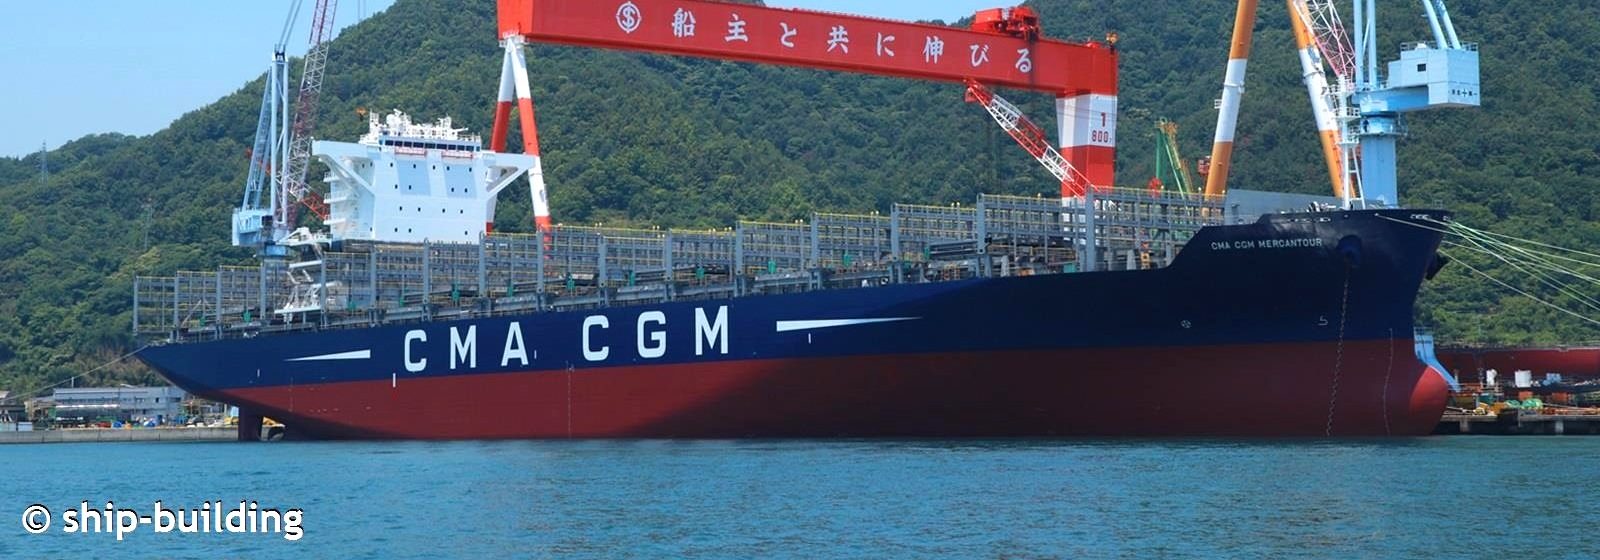 De 'CMA CGM Mercantour' (5.900 teu) in aanbouw bij Imabari